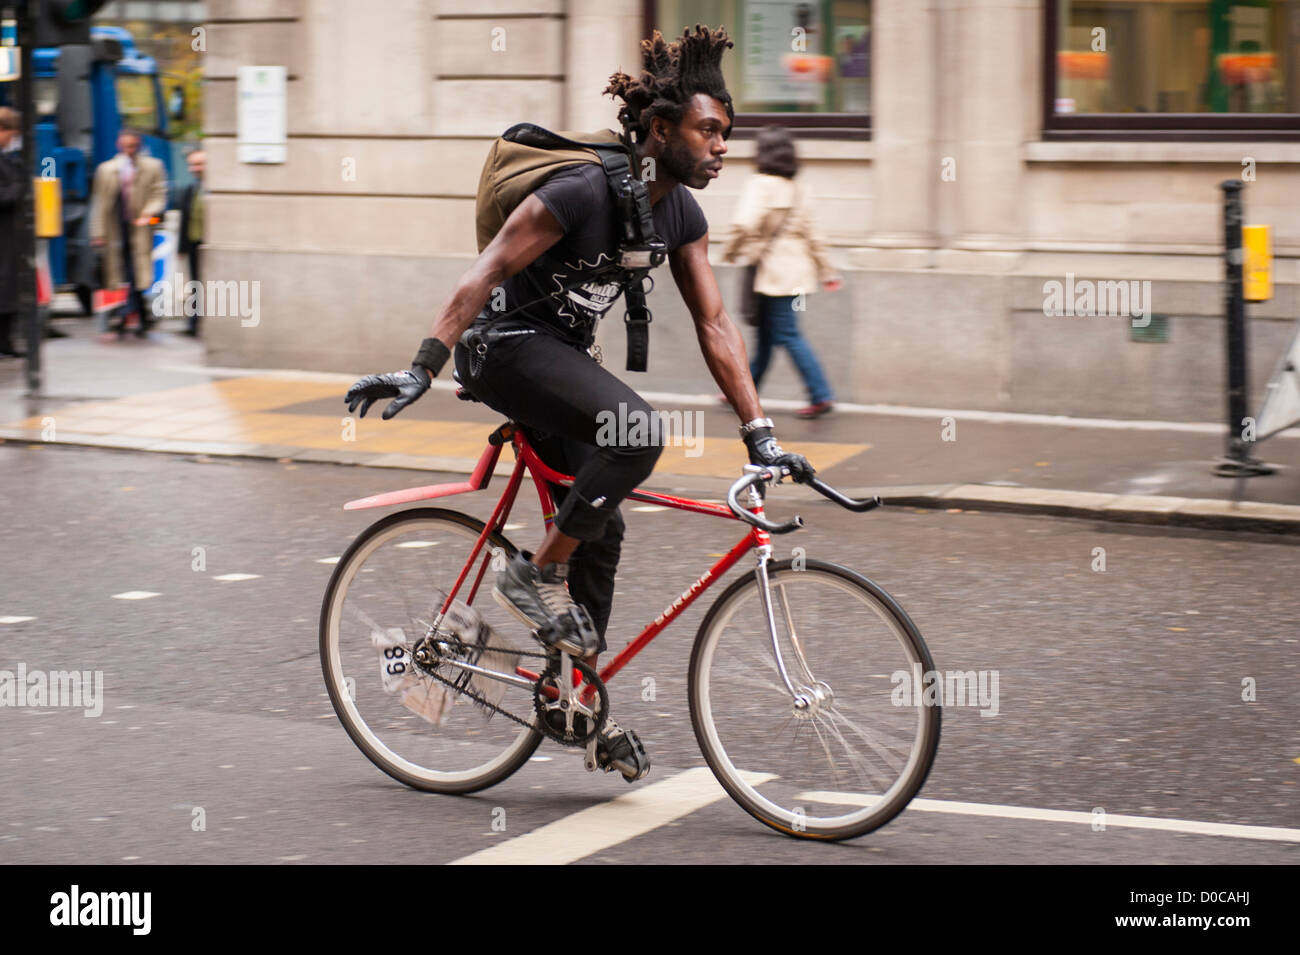 London, City, schwarzer Mann Junge männliche Messenger auf dem Fahrrad Fahrrad Zyklus Biker mit Afro-Haar-Frisur Stockfoto